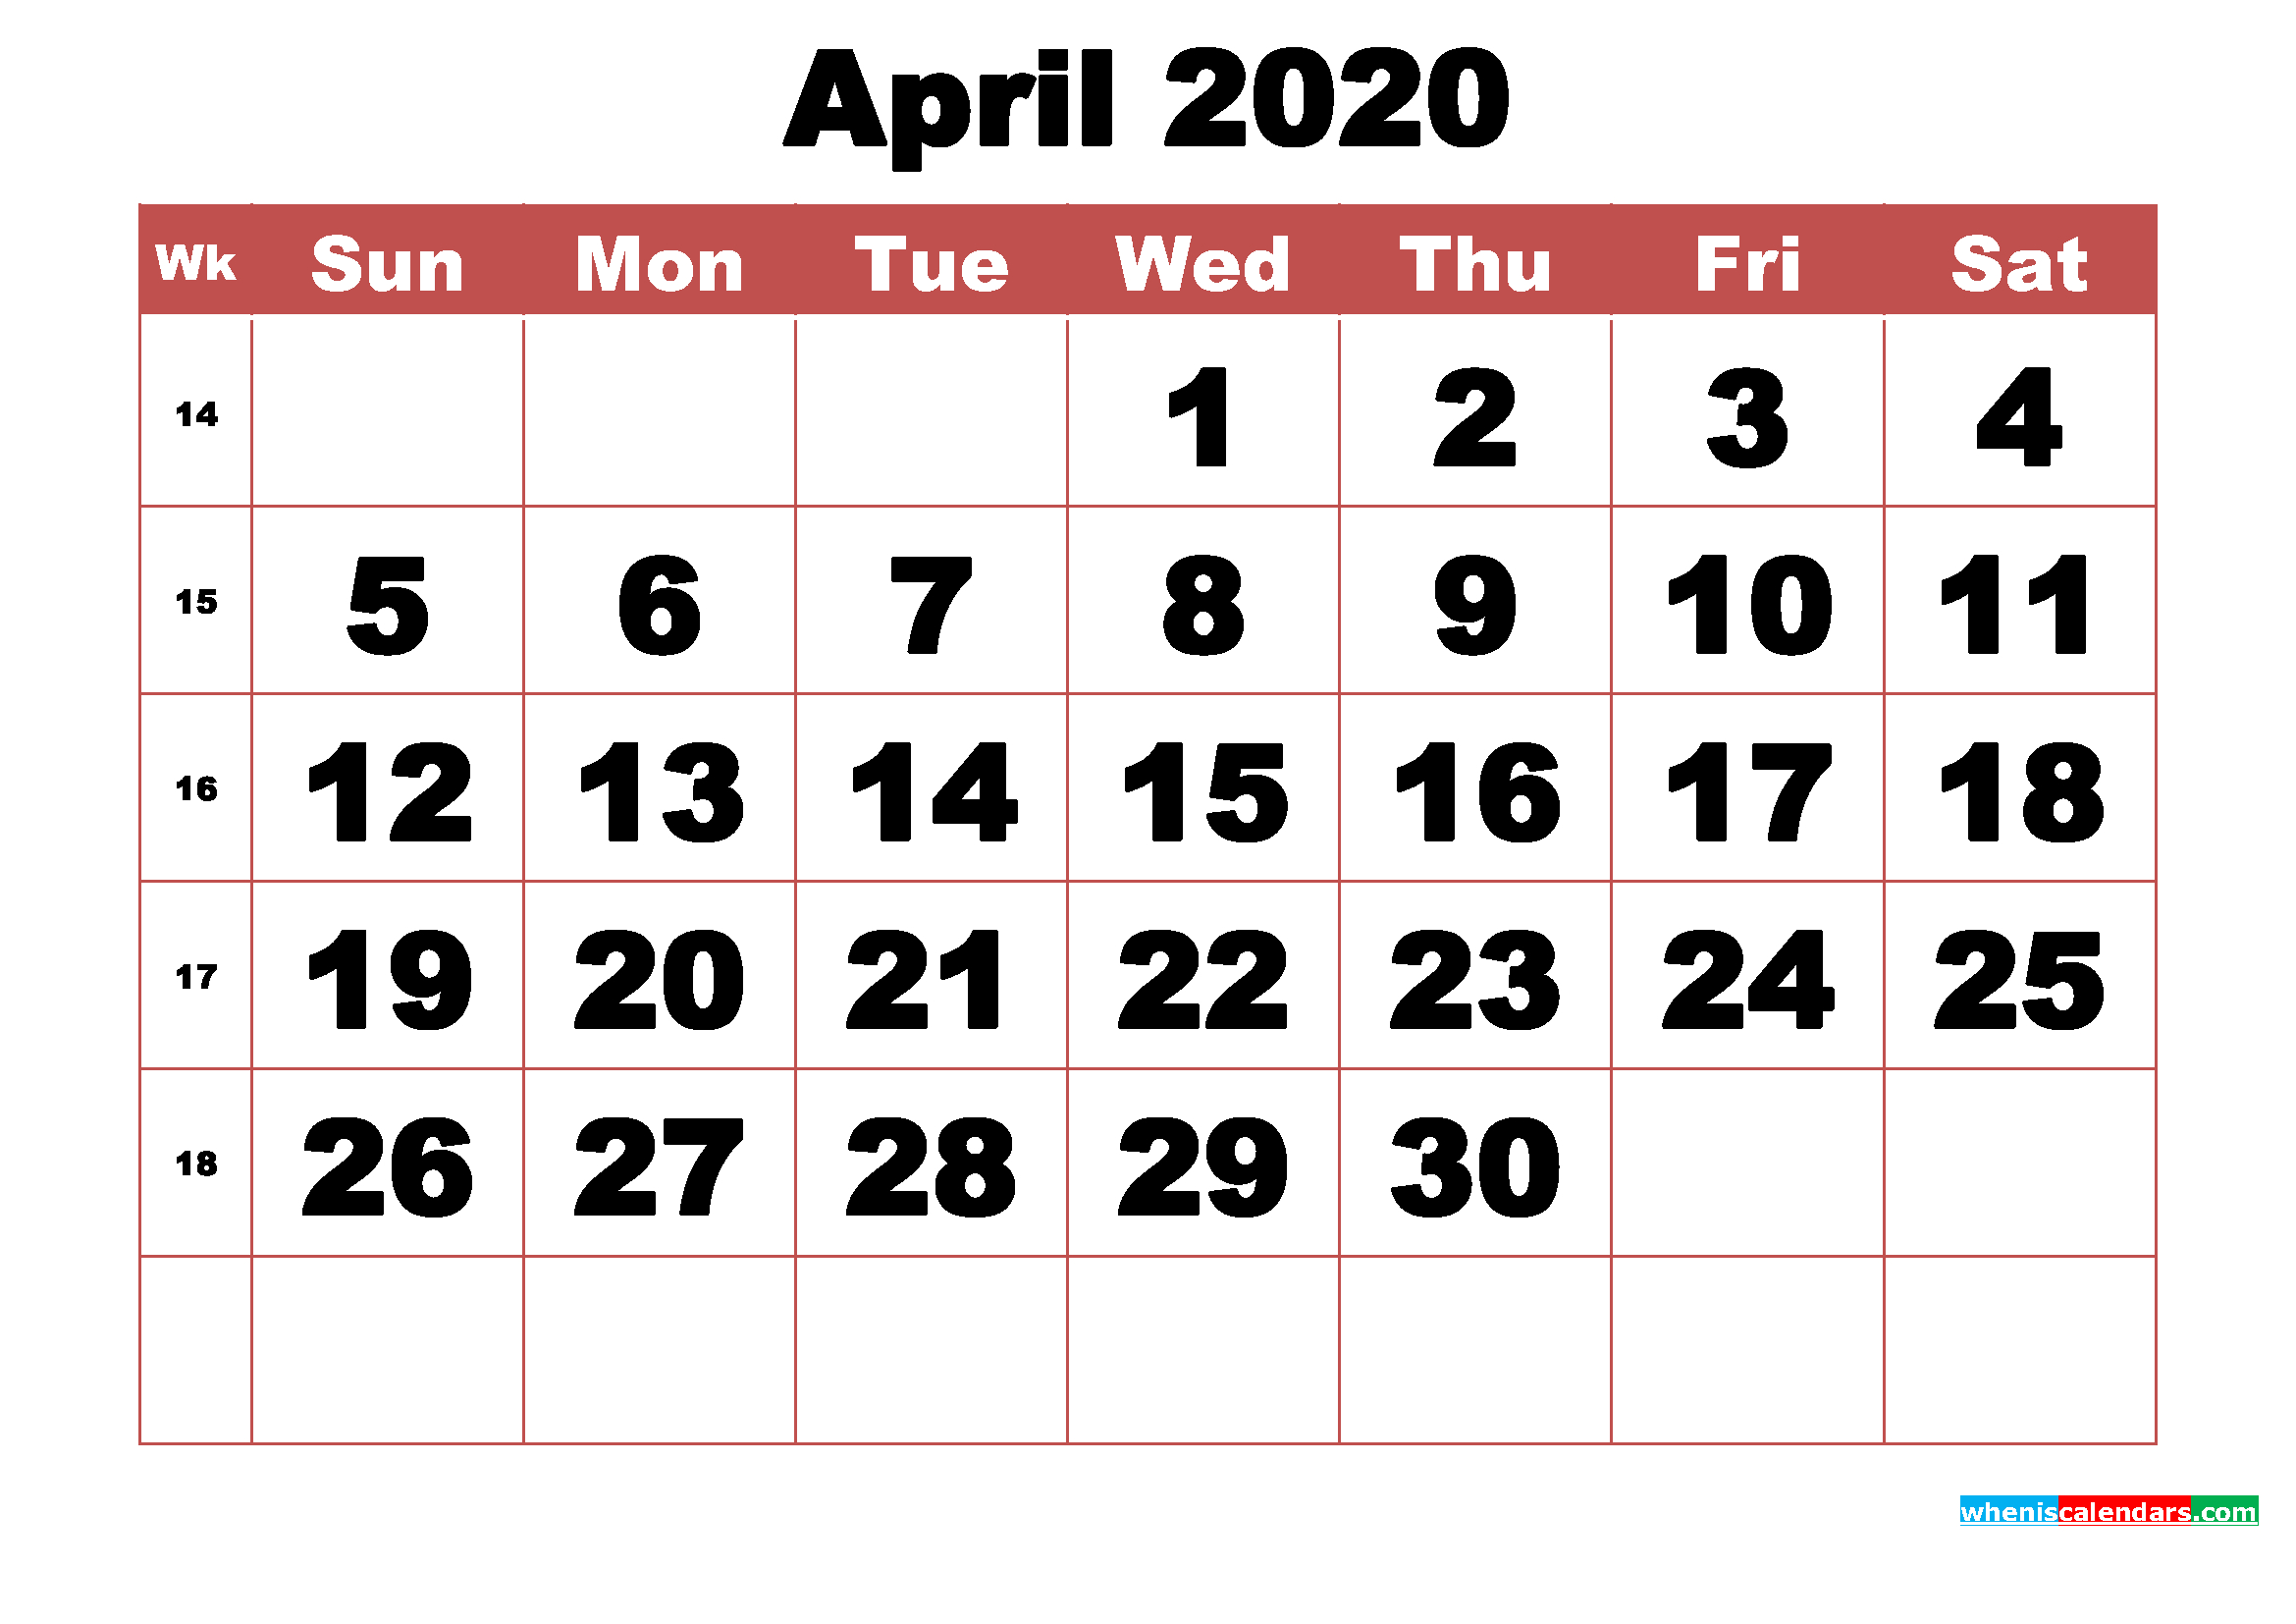 Free Printable April 2020 Calendar With Week Numbers